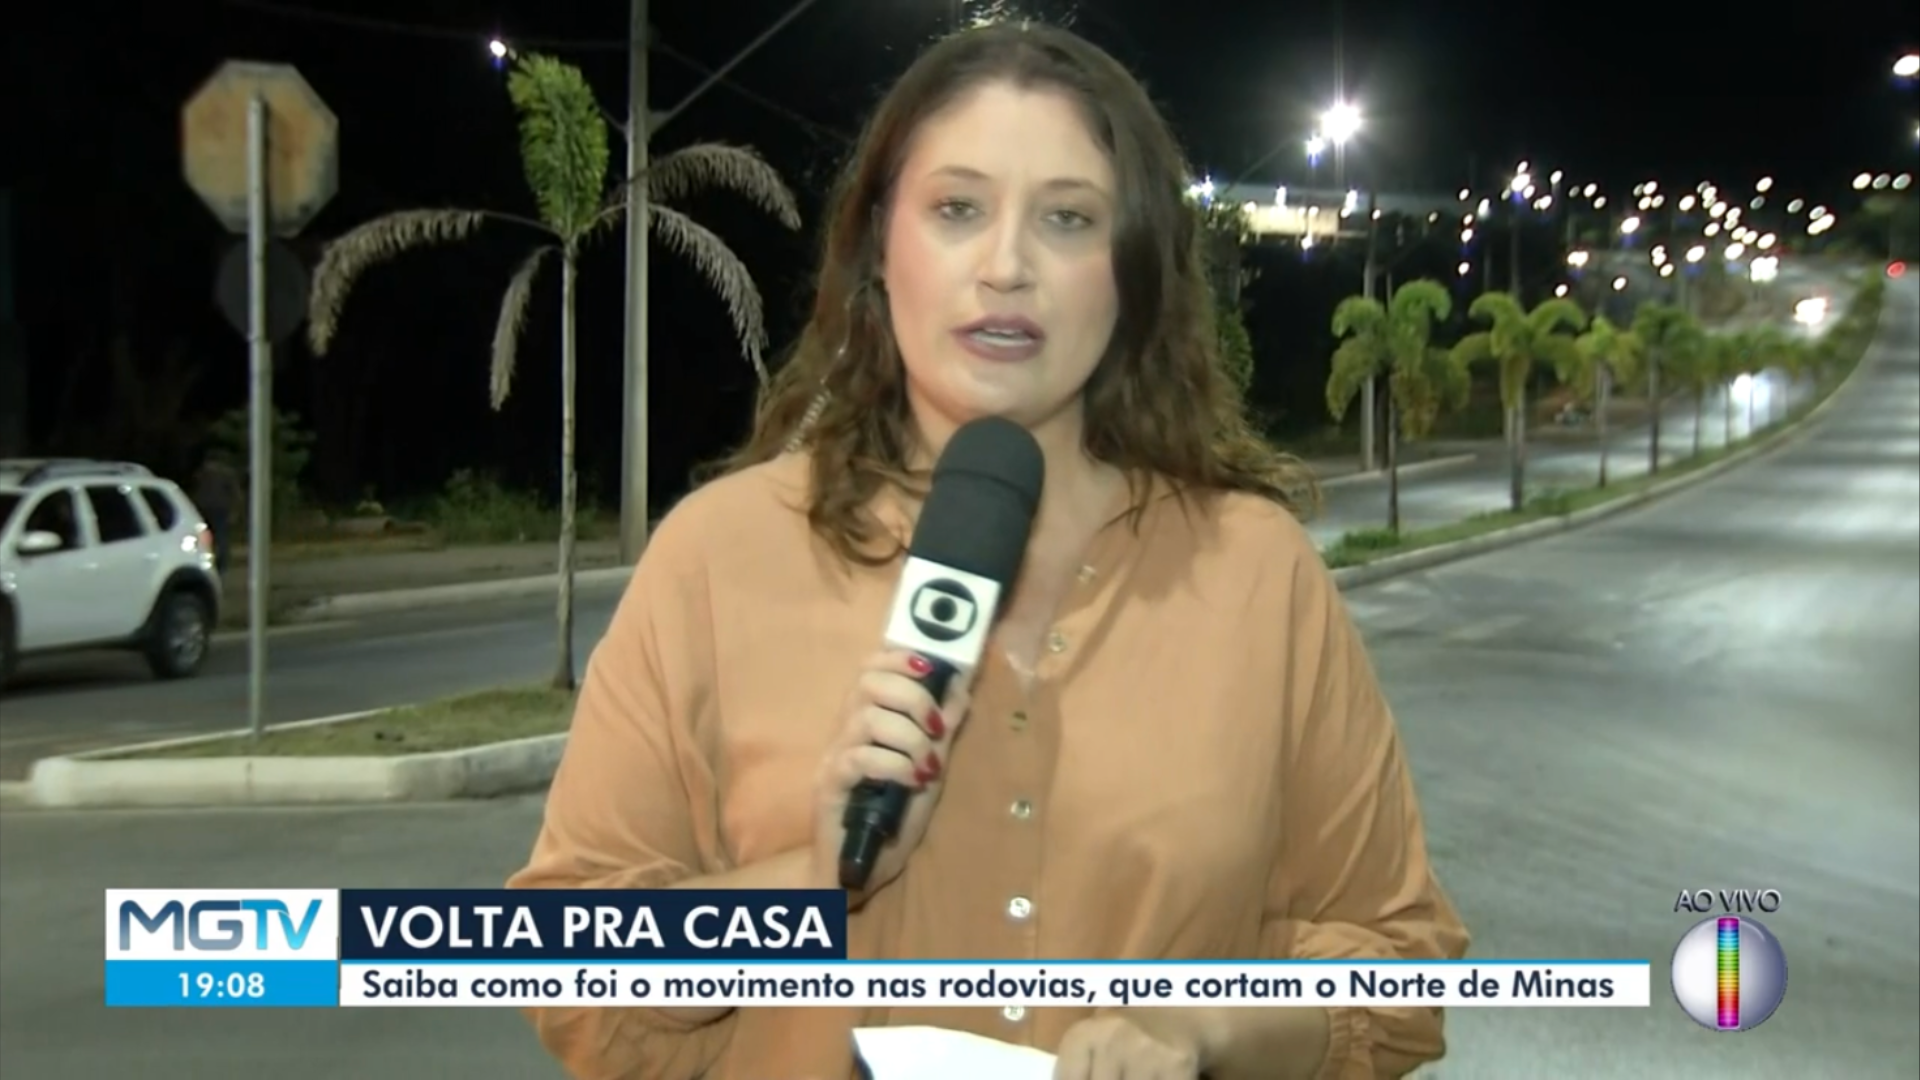 Homem surpreende repórter da Globo ao mostrar bumbum ao vivo em telejornal; assista